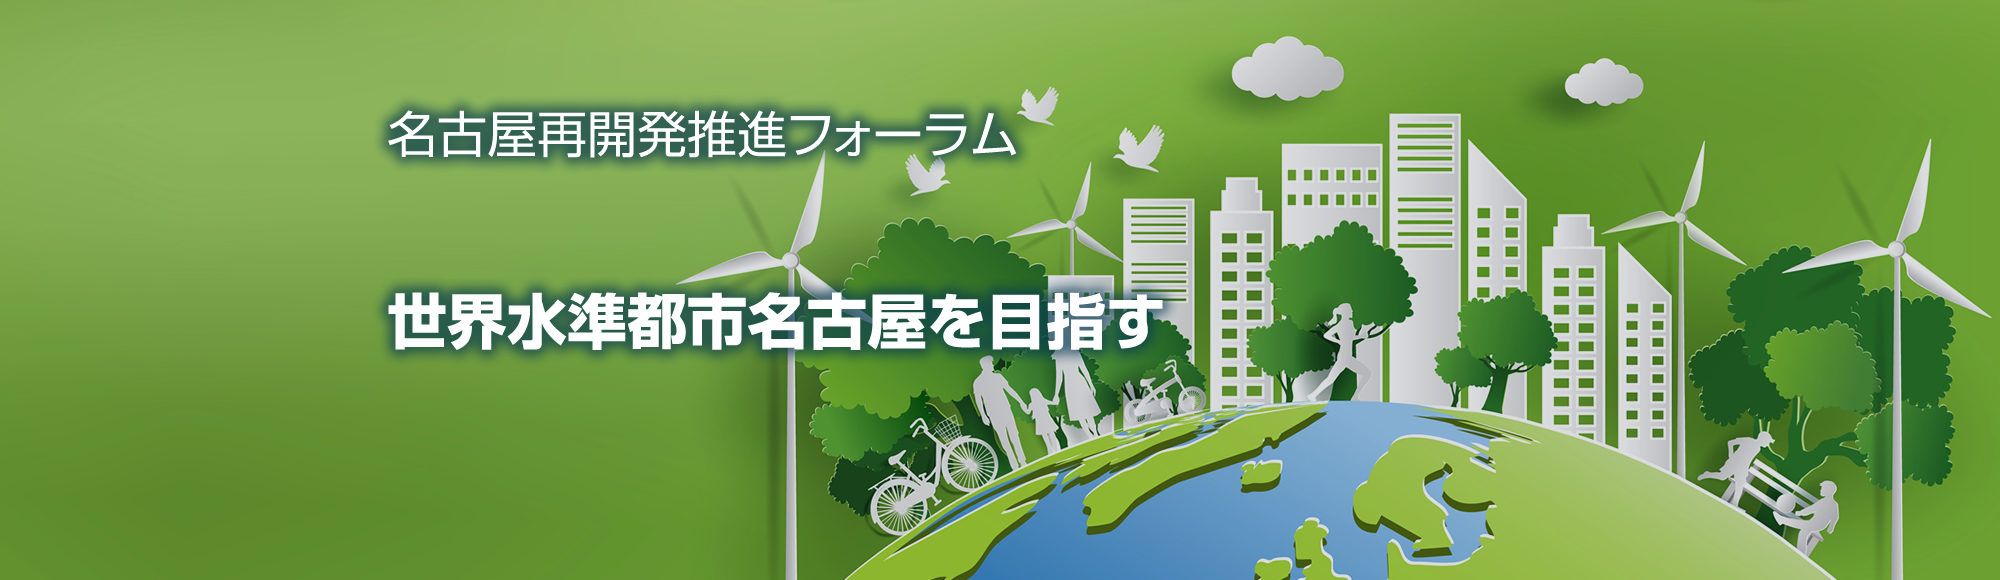 名古屋再開発推進フォーラム 世界水準都市名古屋を目指す